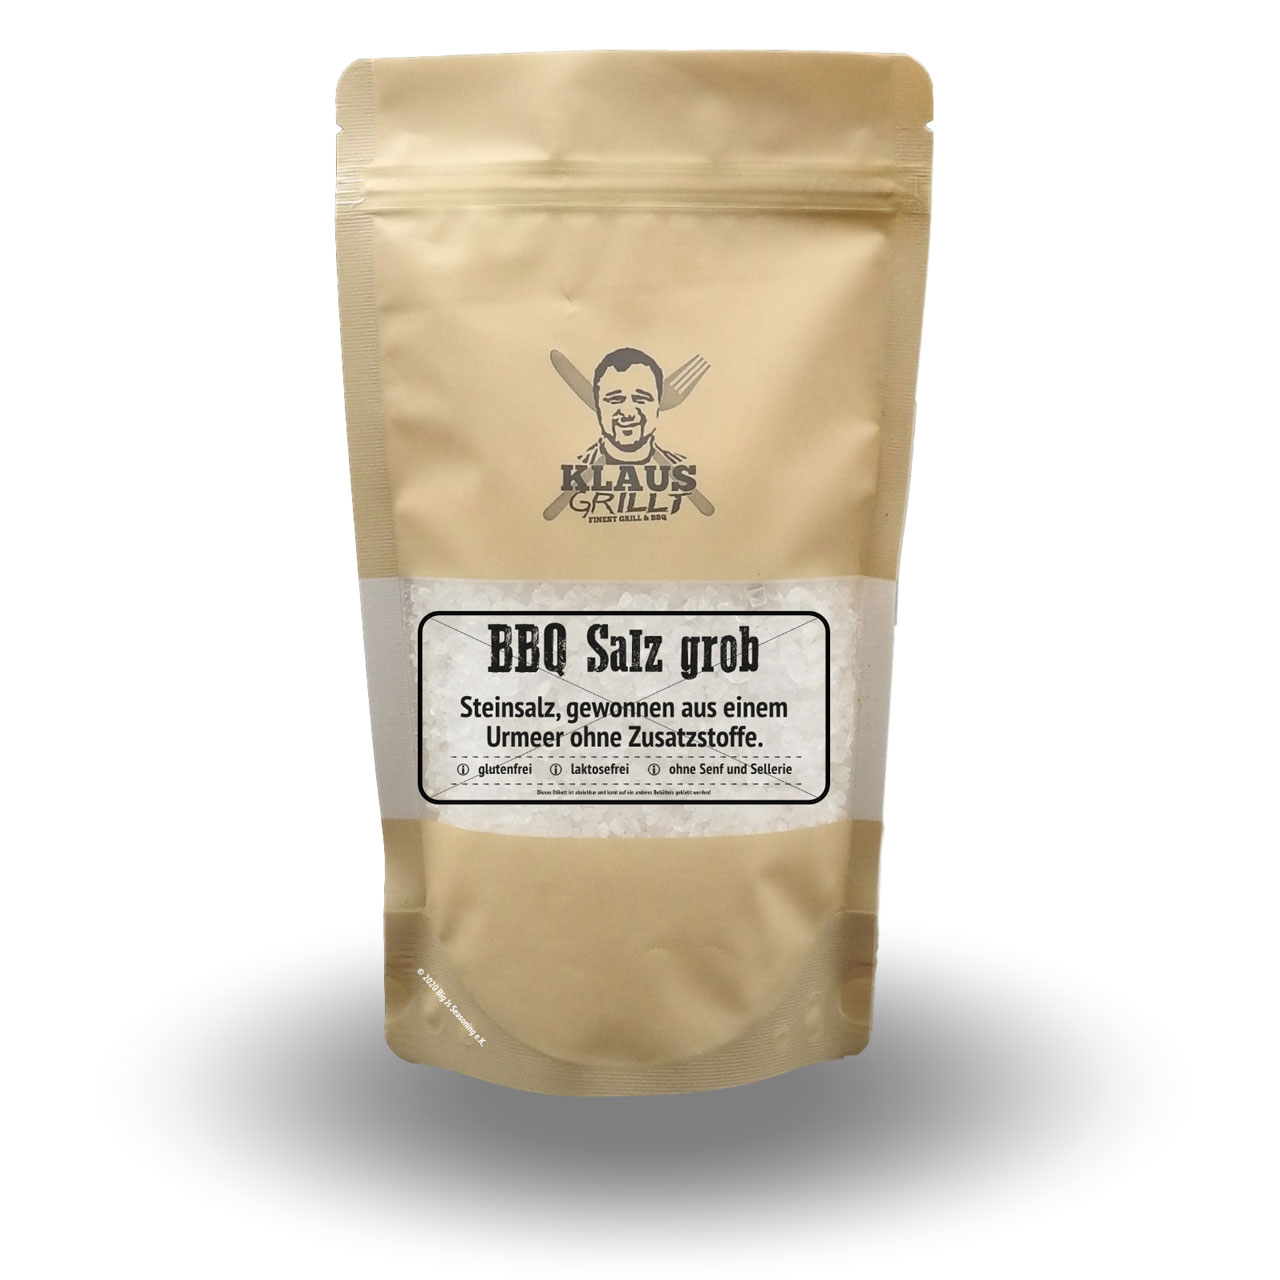 Klaus Grillt - BBQ Salz Grob 450 g